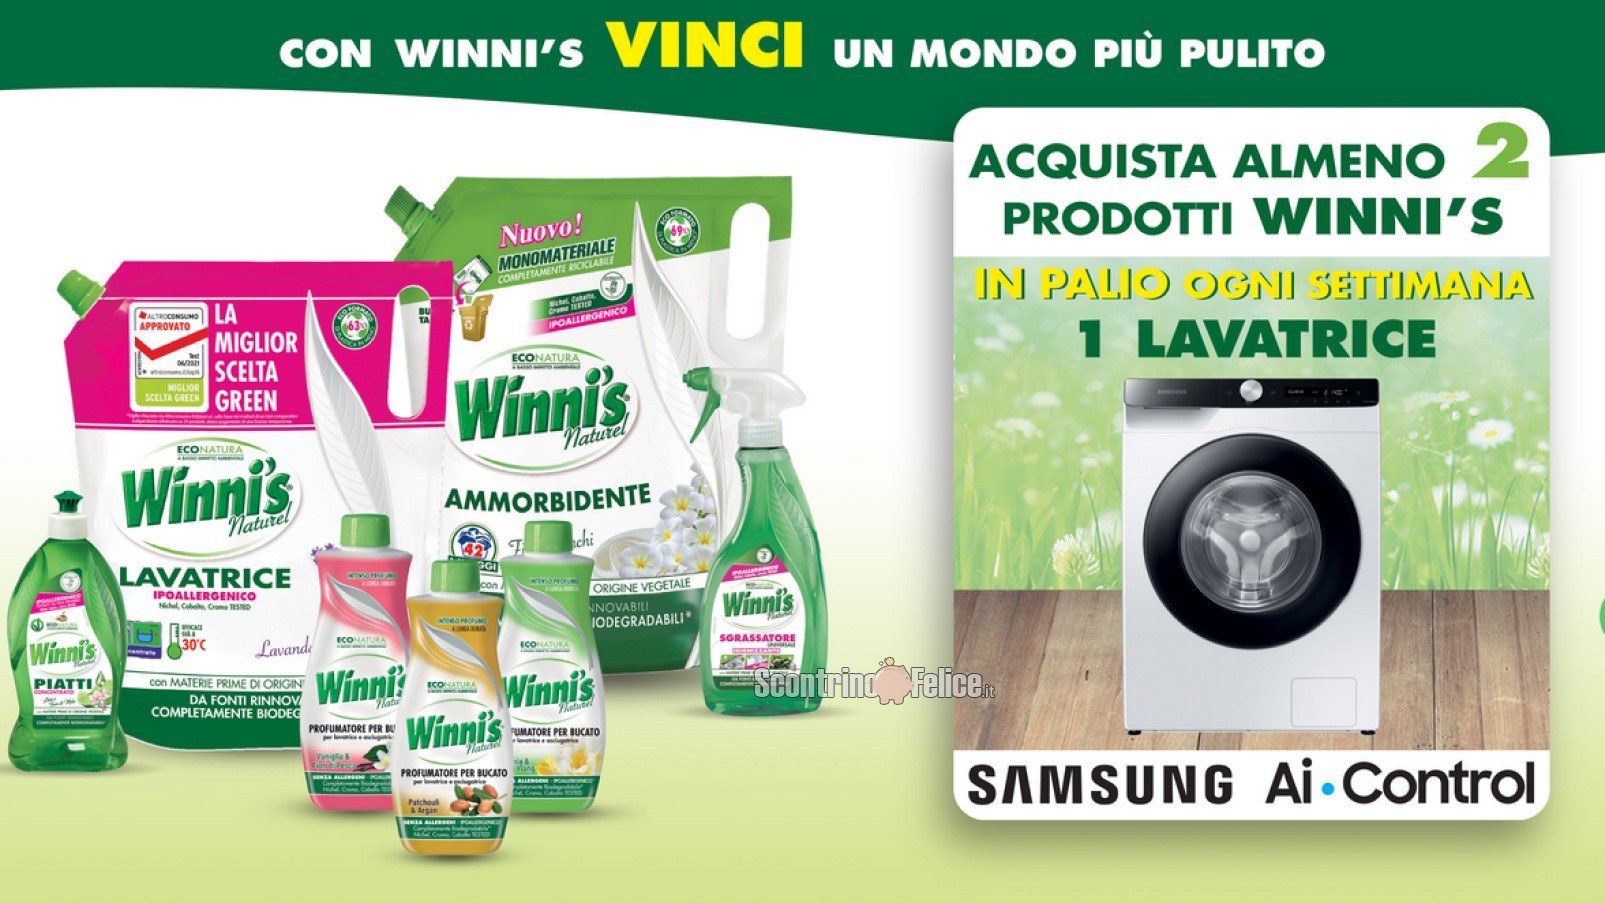 Concorso Winni's Naturel "Vinci Un Mondo Più Pulito": in palio 1 lavatrice Samsung Ai Control ogni settimana